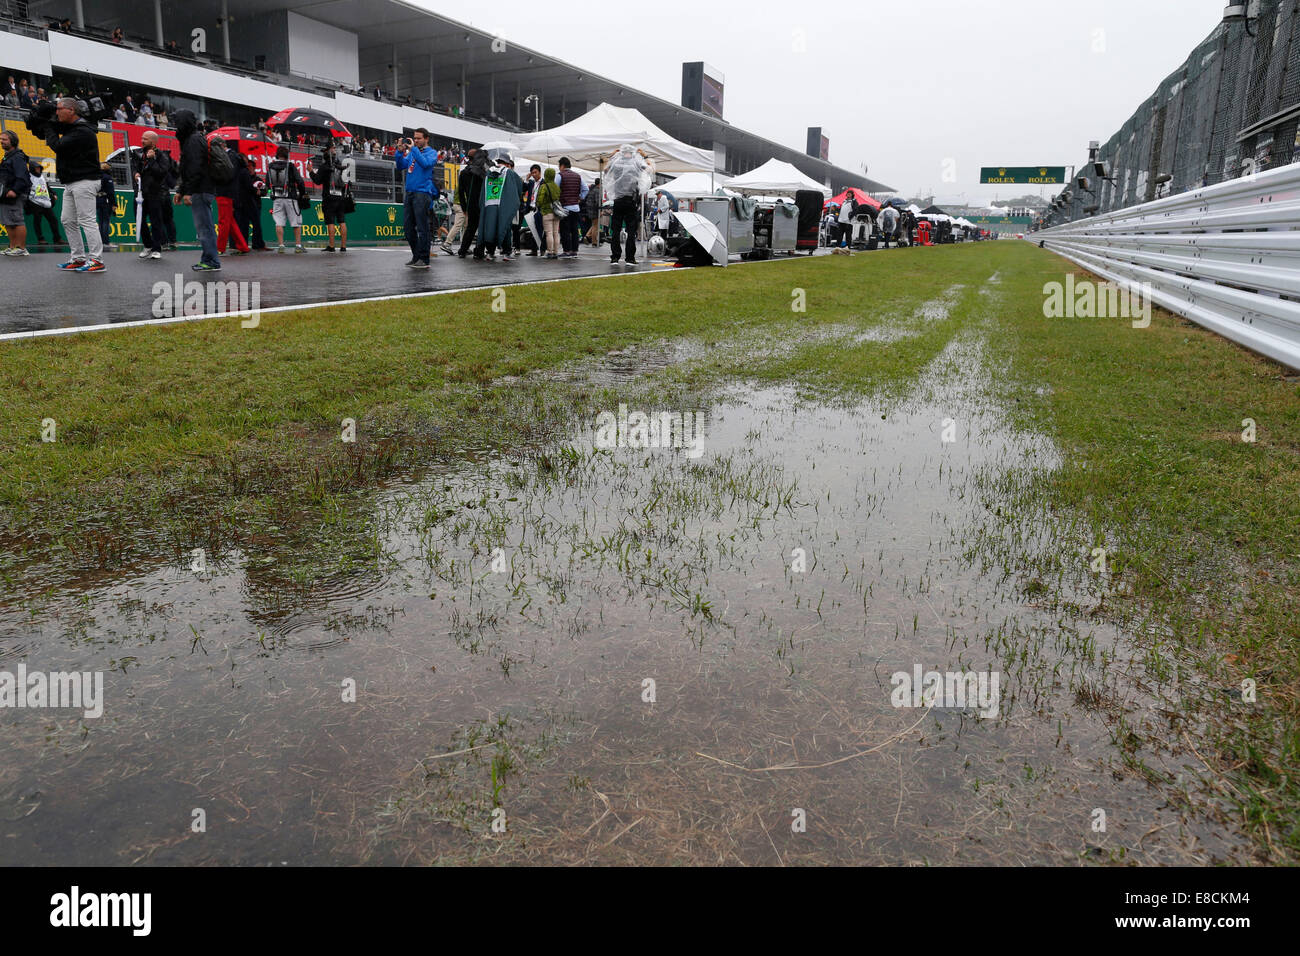 Motorsport: FIA Formel 1 Weltmeisterschaft 2014, Grand Prix von Japan, Regen, Regen Credit: Dpa picture-Alliance/Alamy Live News Stockfoto